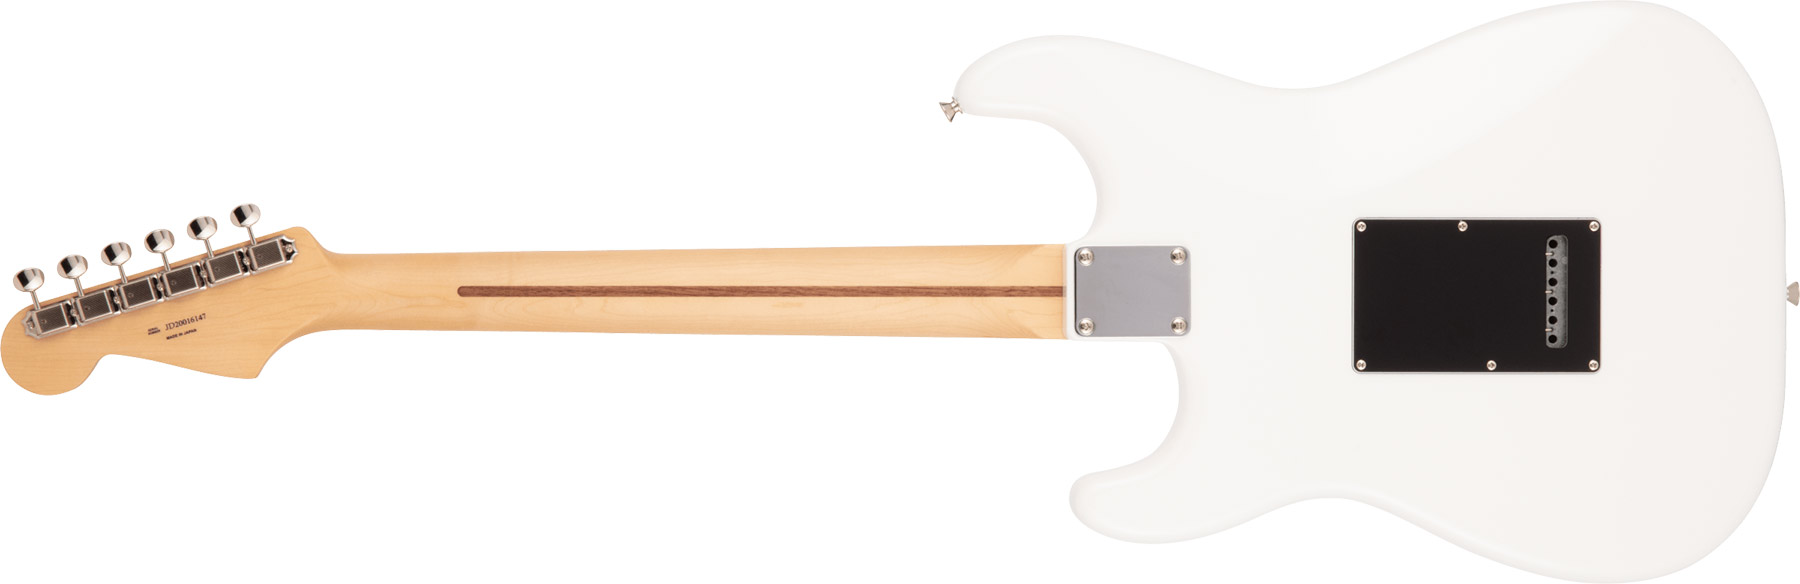 Fender Strat Hybrid Ii Mij Jap 3s Trem Mn - Arctic White - Str shape electric guitar - Variation 1